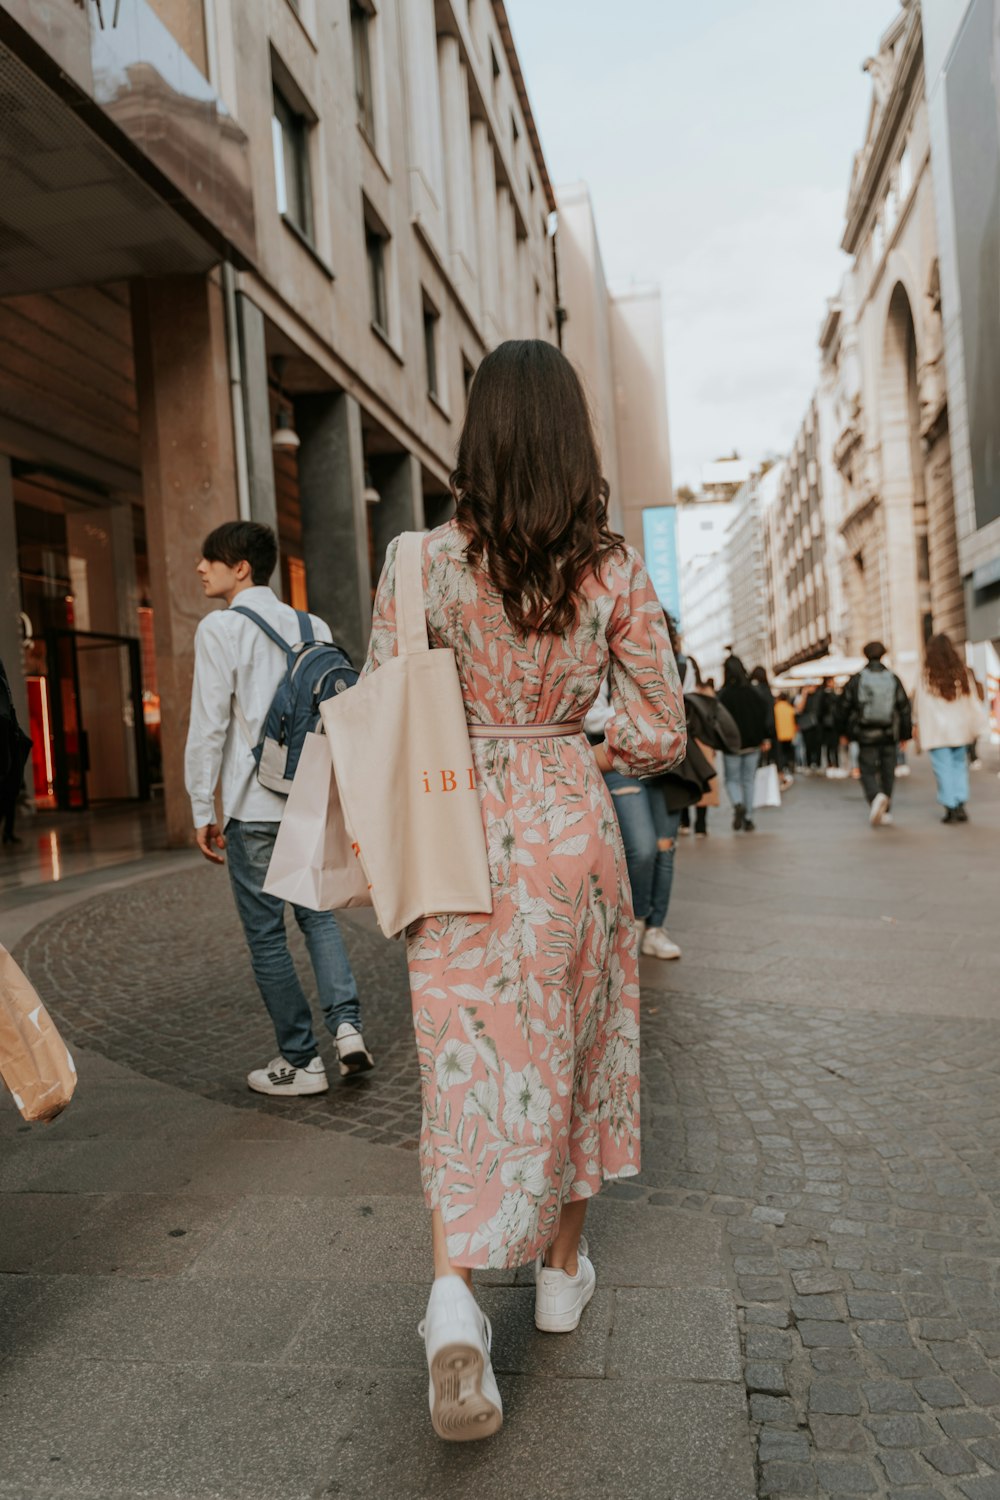 Una mujer caminando por una calle cargando bolsas de compras